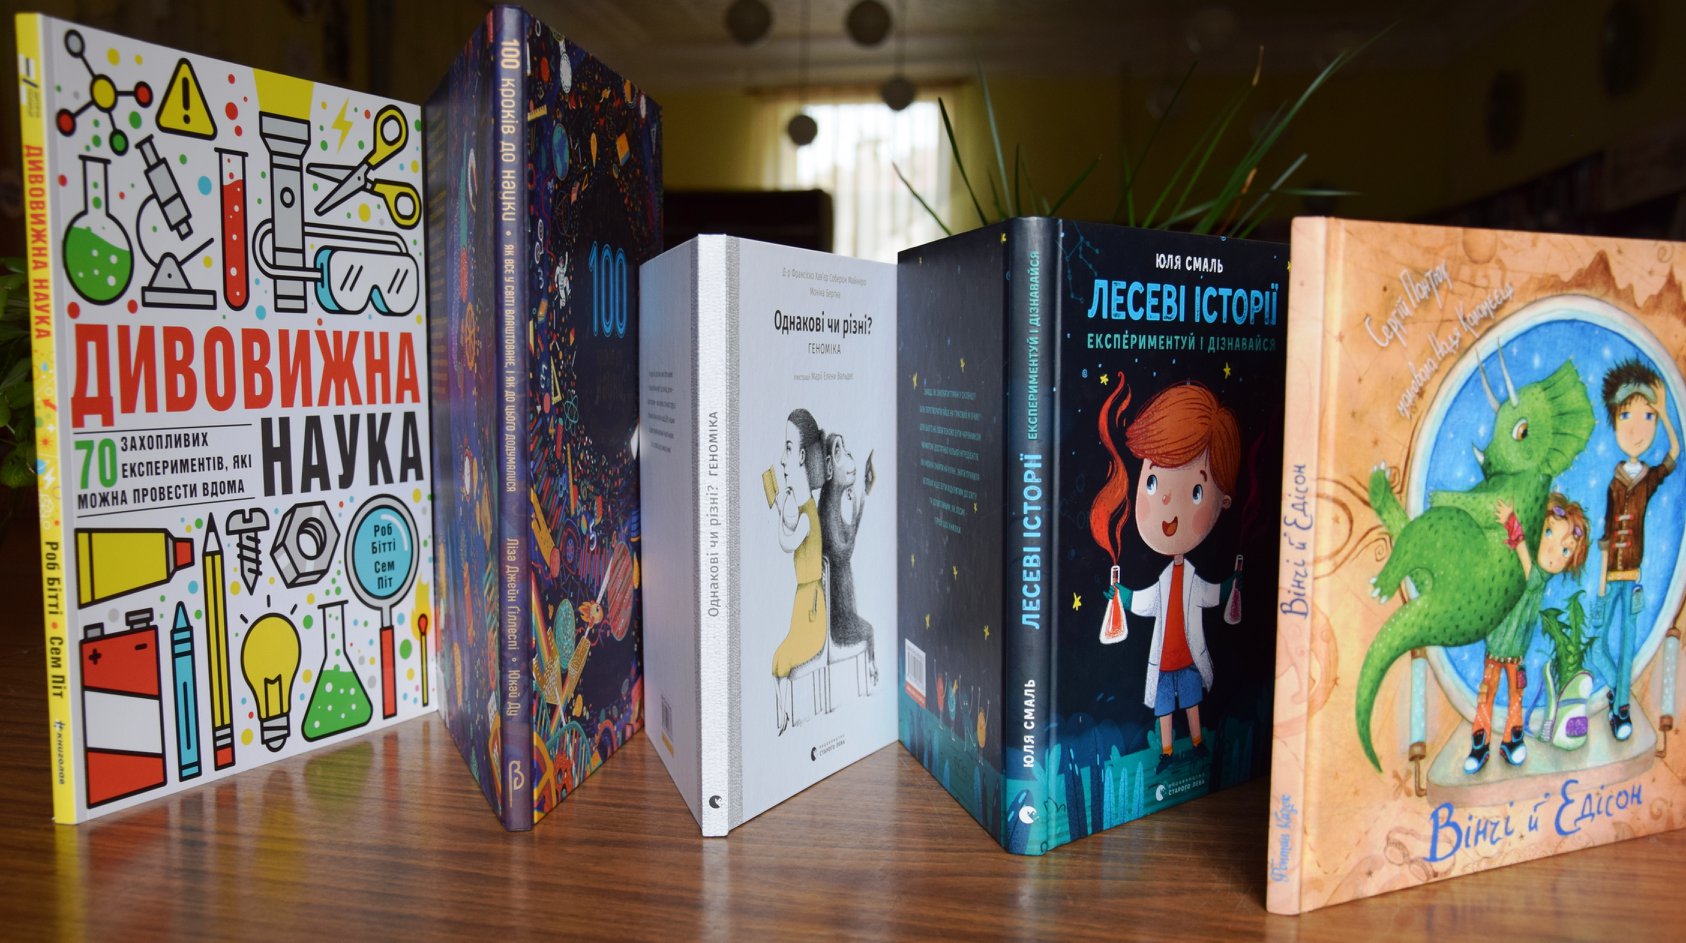 П'ятнадцять бібліотек семи східних областей України отримали найкращі науково-популярні книжки для дітей Книжкового Арсеналу 2019 у подарунок від ЛакіБукс.